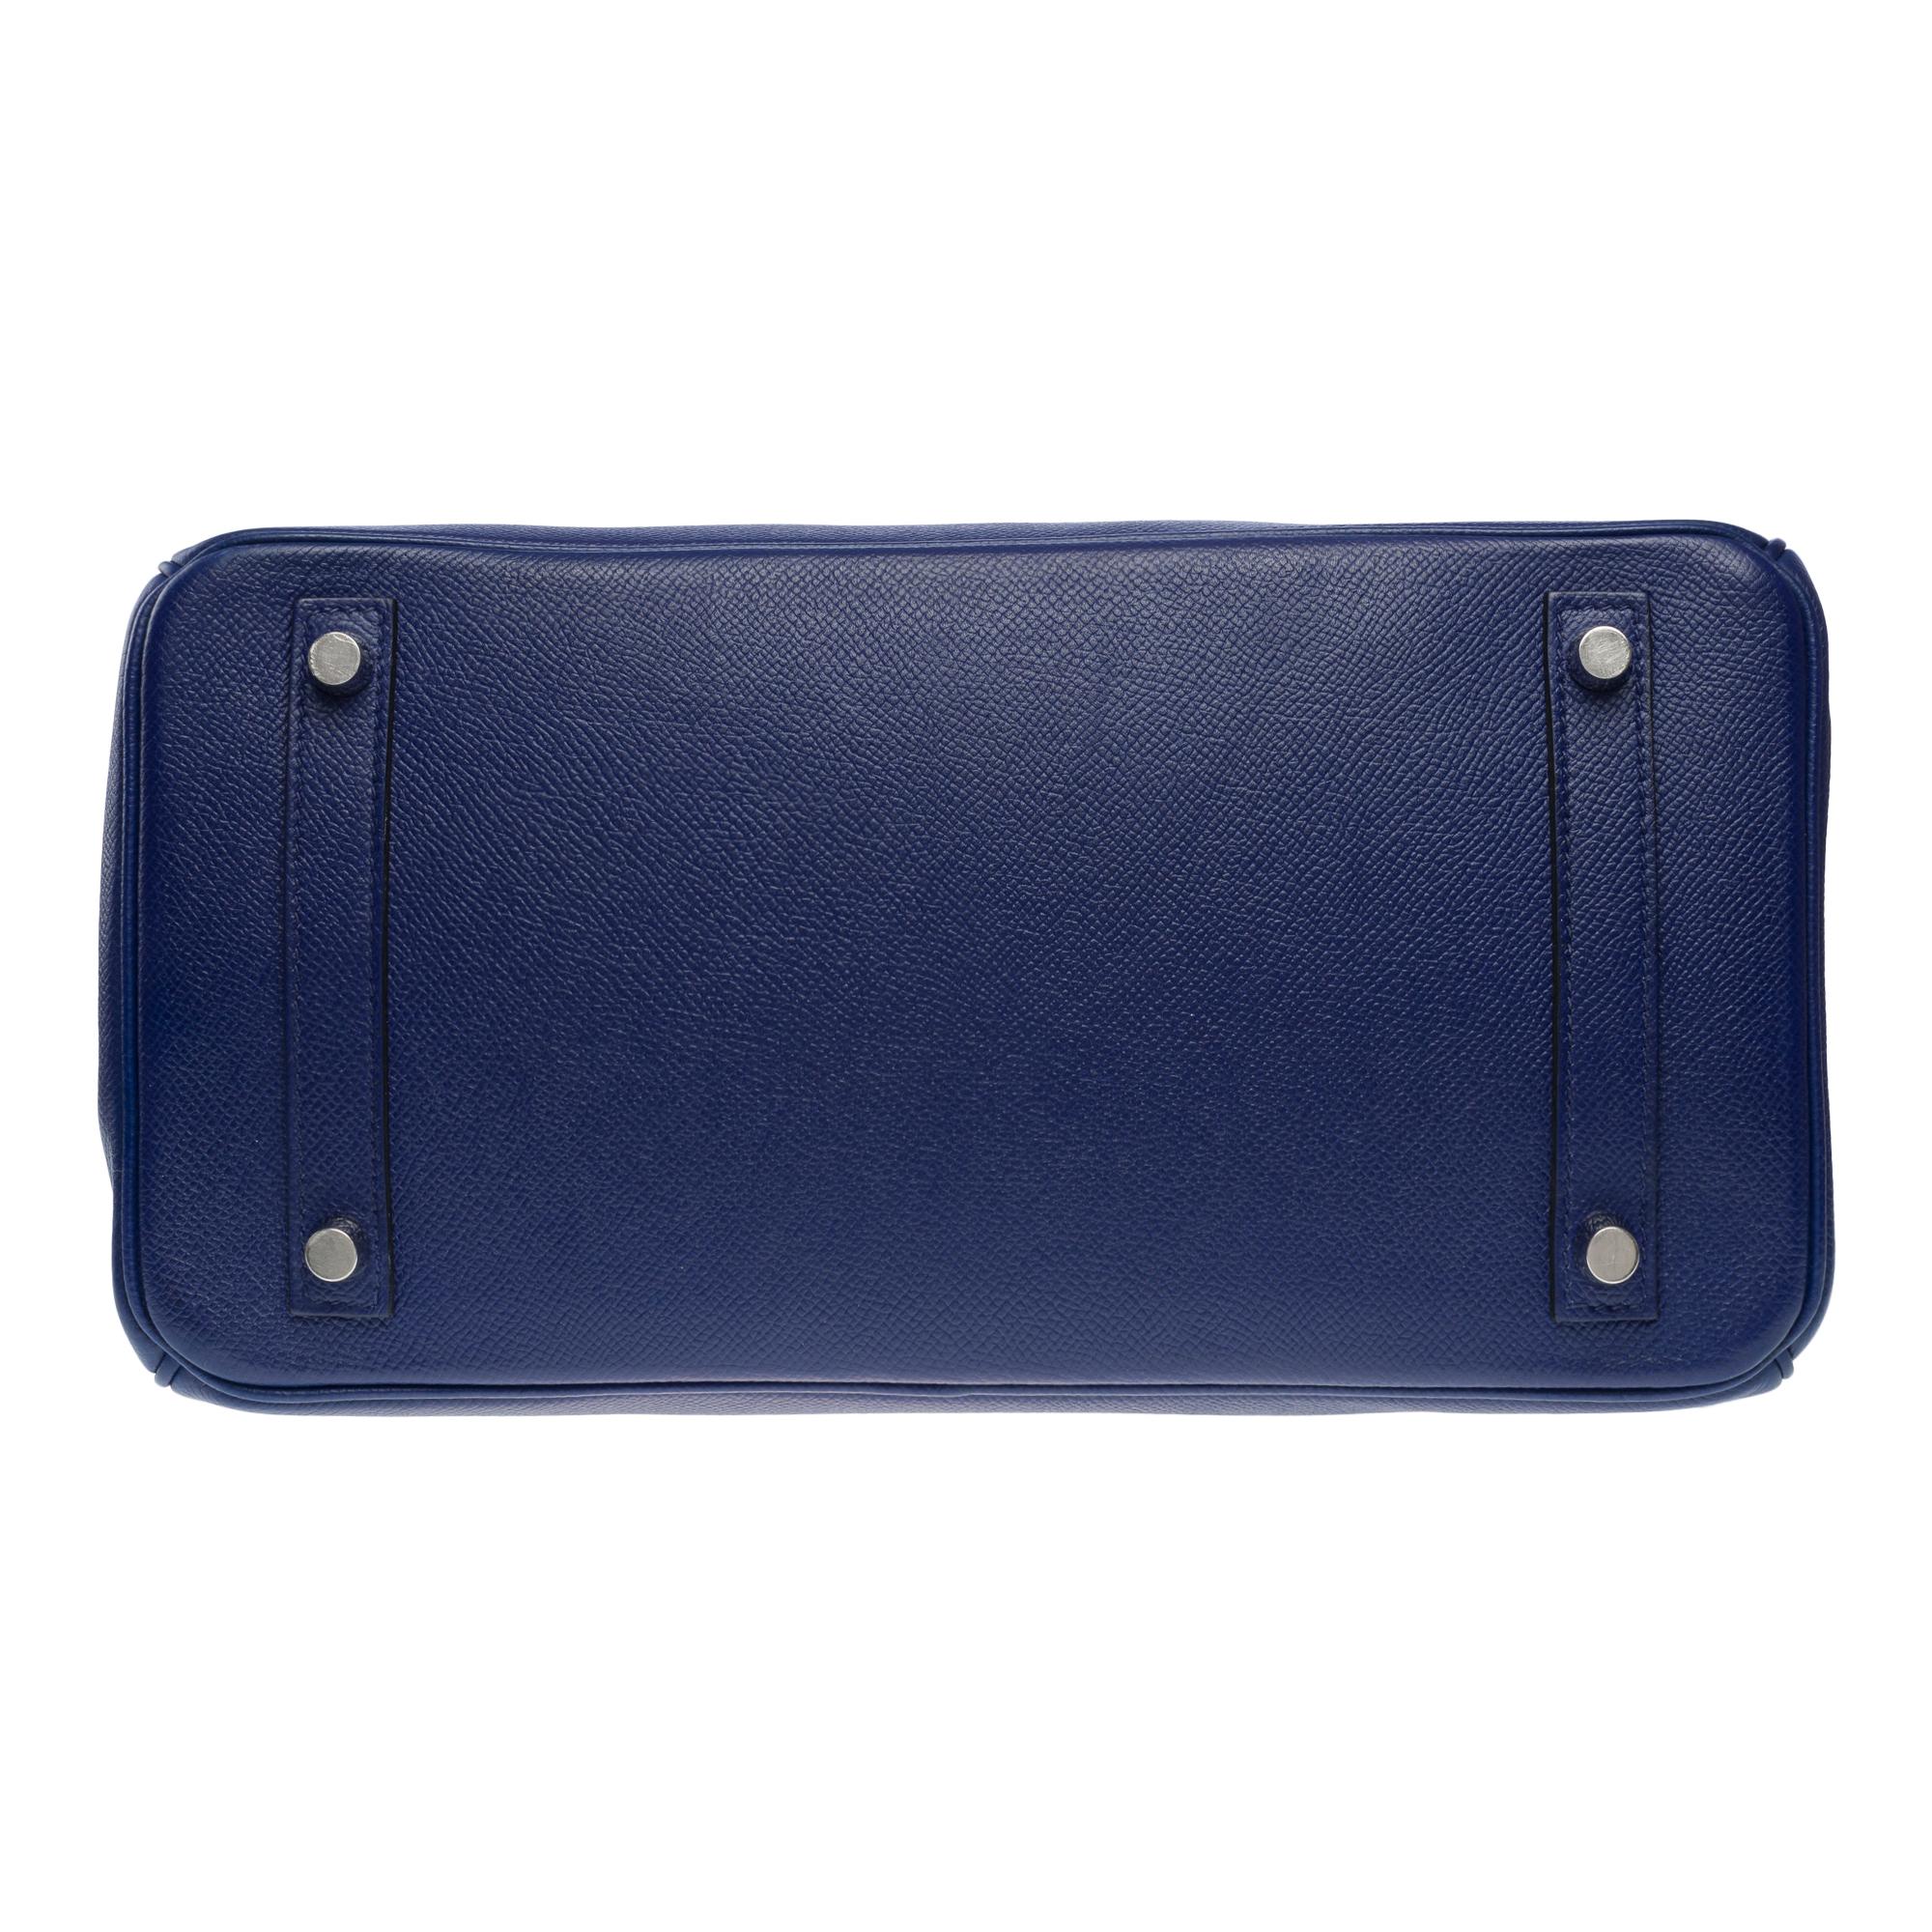 Stunning Hermes Birkin 30 handbag in Blue Sapphire Epsom leather, SHW For Sale 6